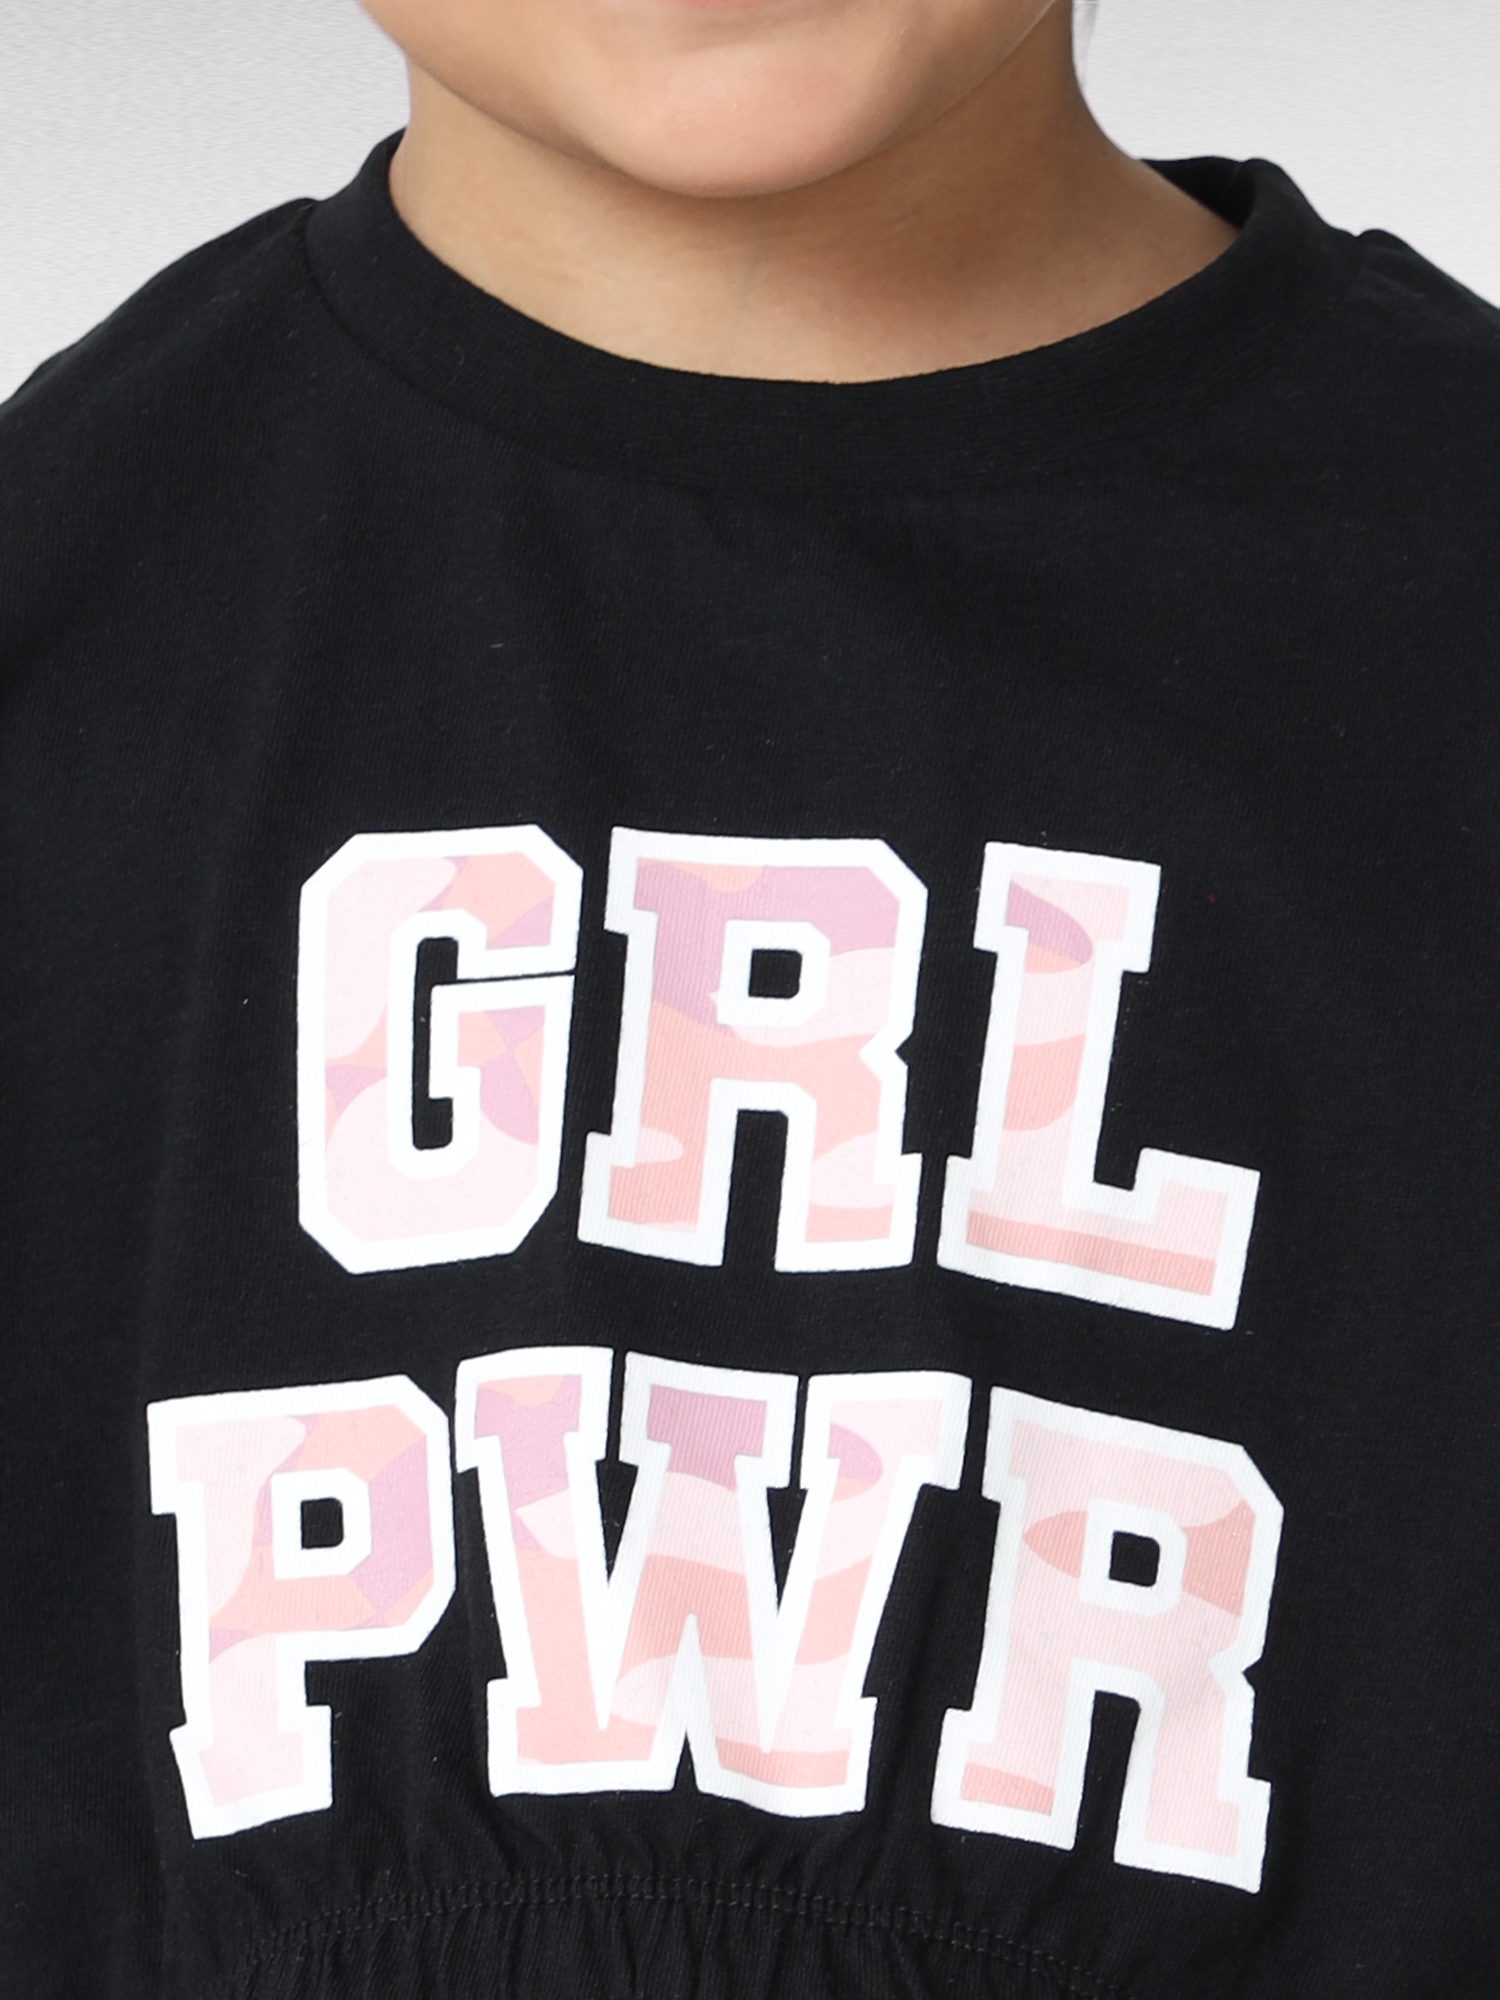 Girl Power Premium girls nightwear pajama set